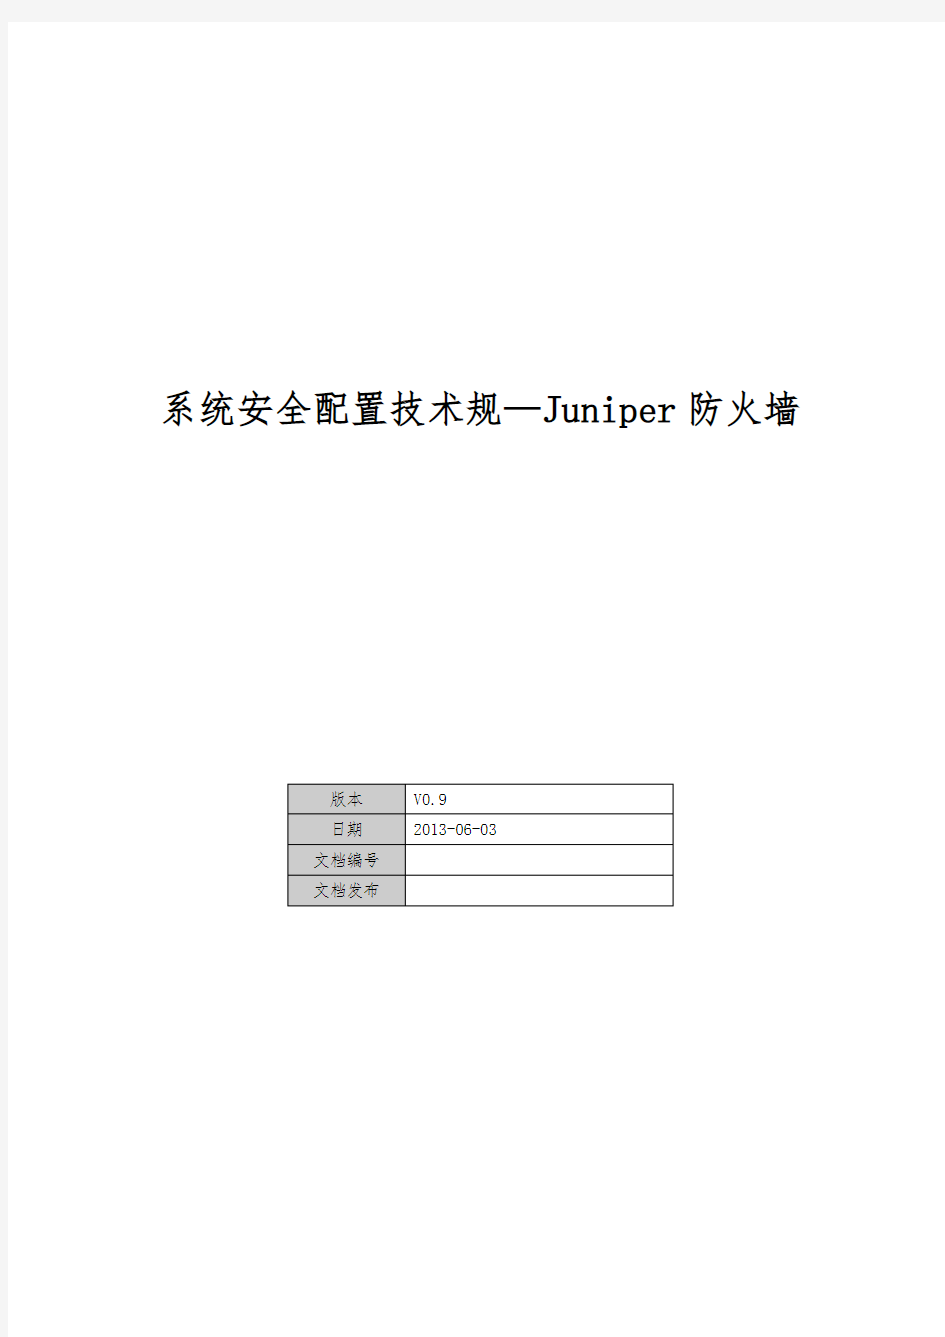 系统安全配置技术规范_Juniper防火墙